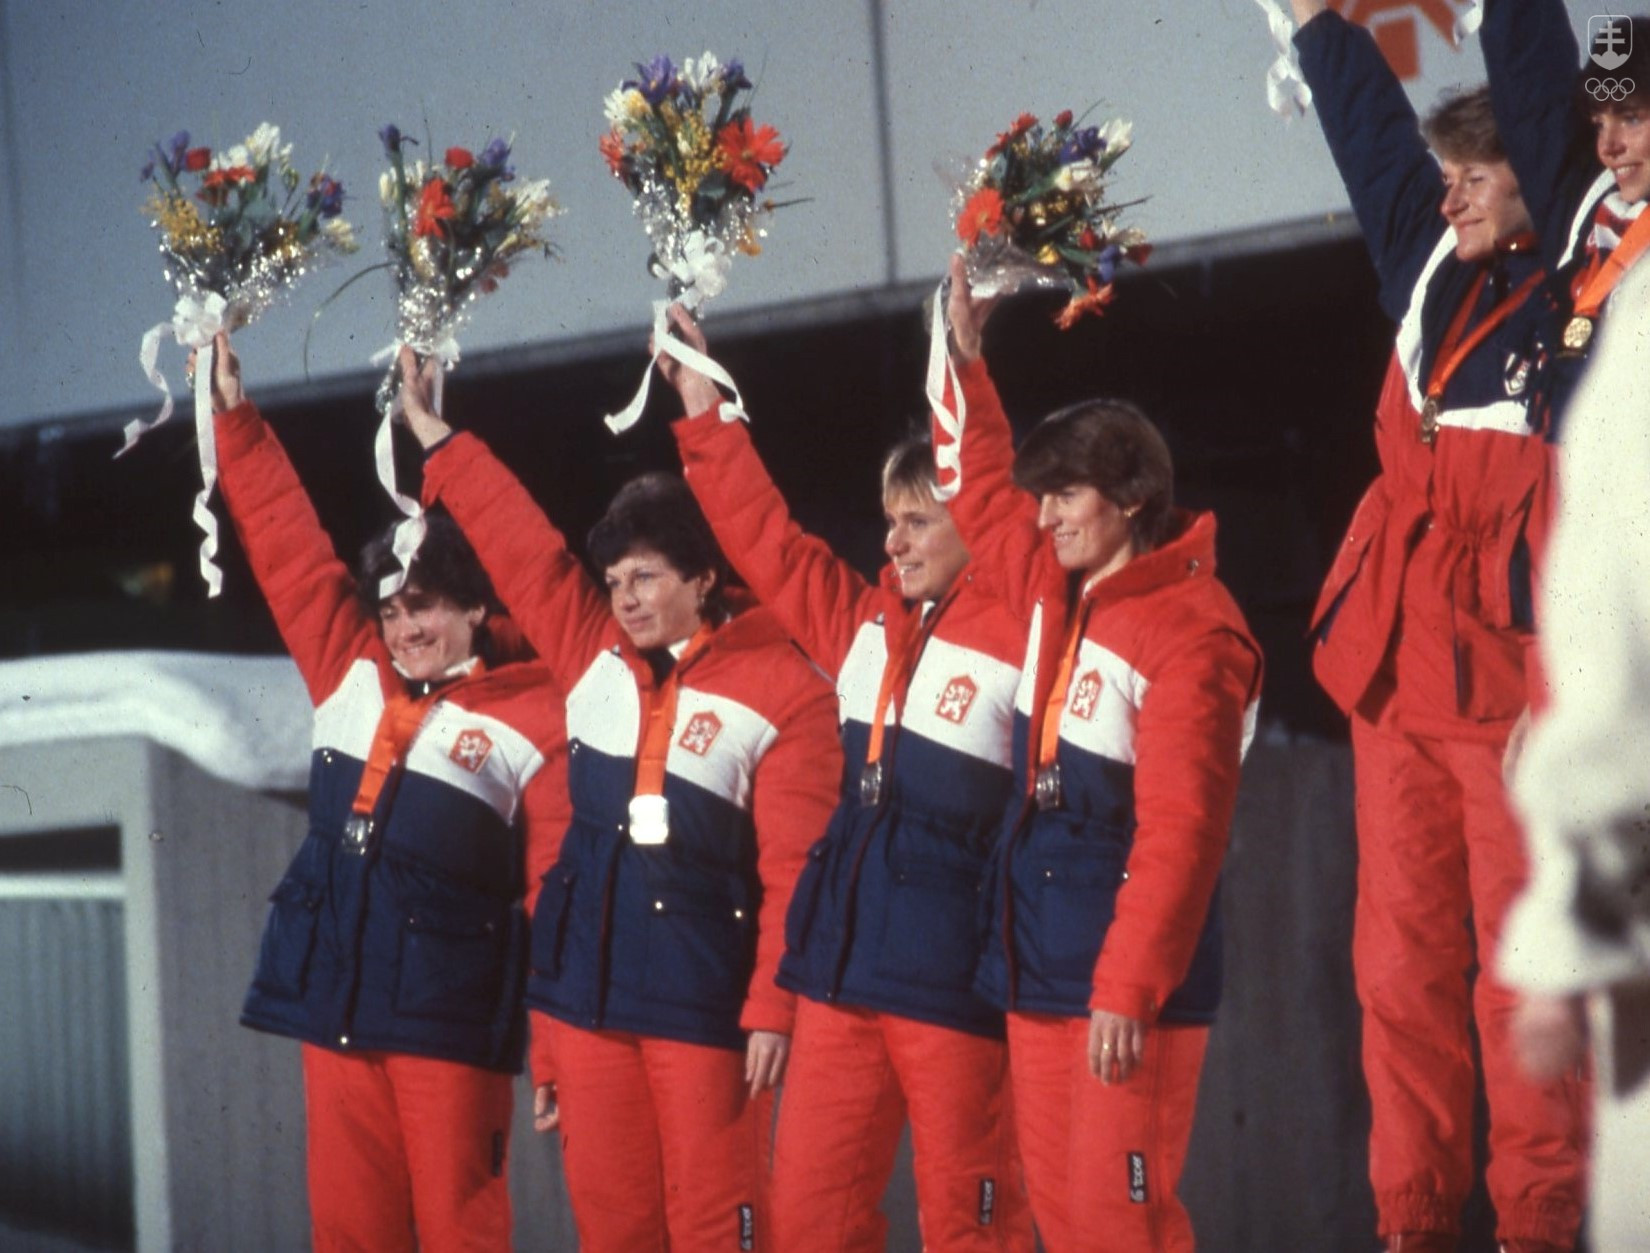 Strieborná štafeta bežkýň na lyžiach ČSSR na ZOH 1984 v Sarajeve. Na stupni víťaziek zľava Květa Jeriová, Gabriela Svobodová-Sekajová, Blanka Paulů a Dagmar Švubová. Zo zlata sa tešili Nórky.